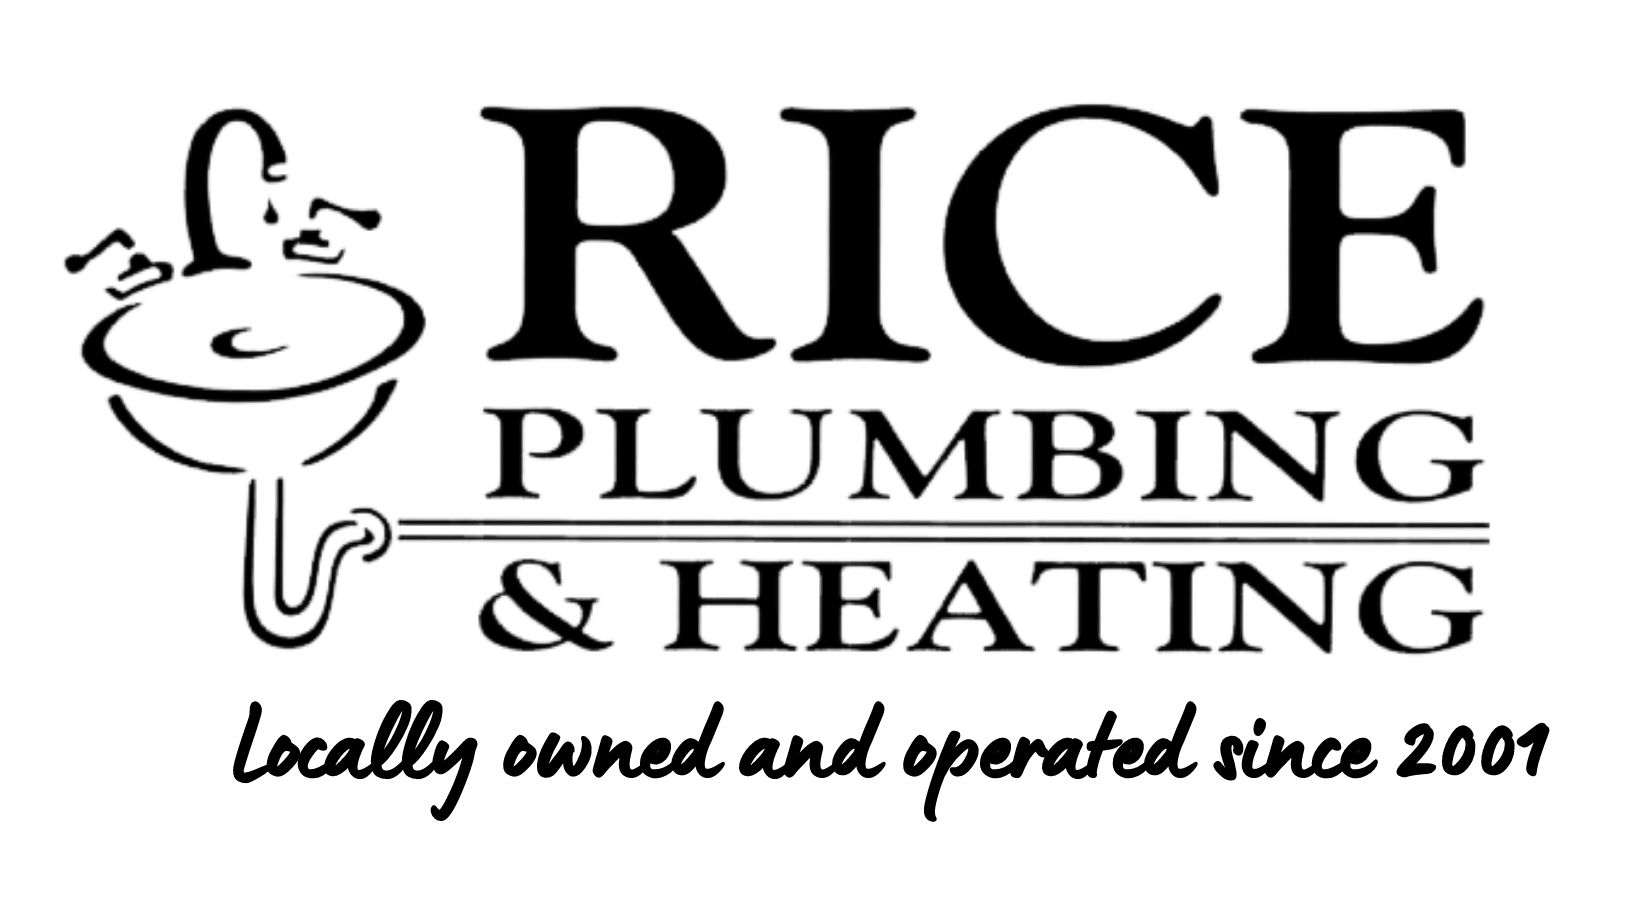 Rice Plumbing & Heating Logo